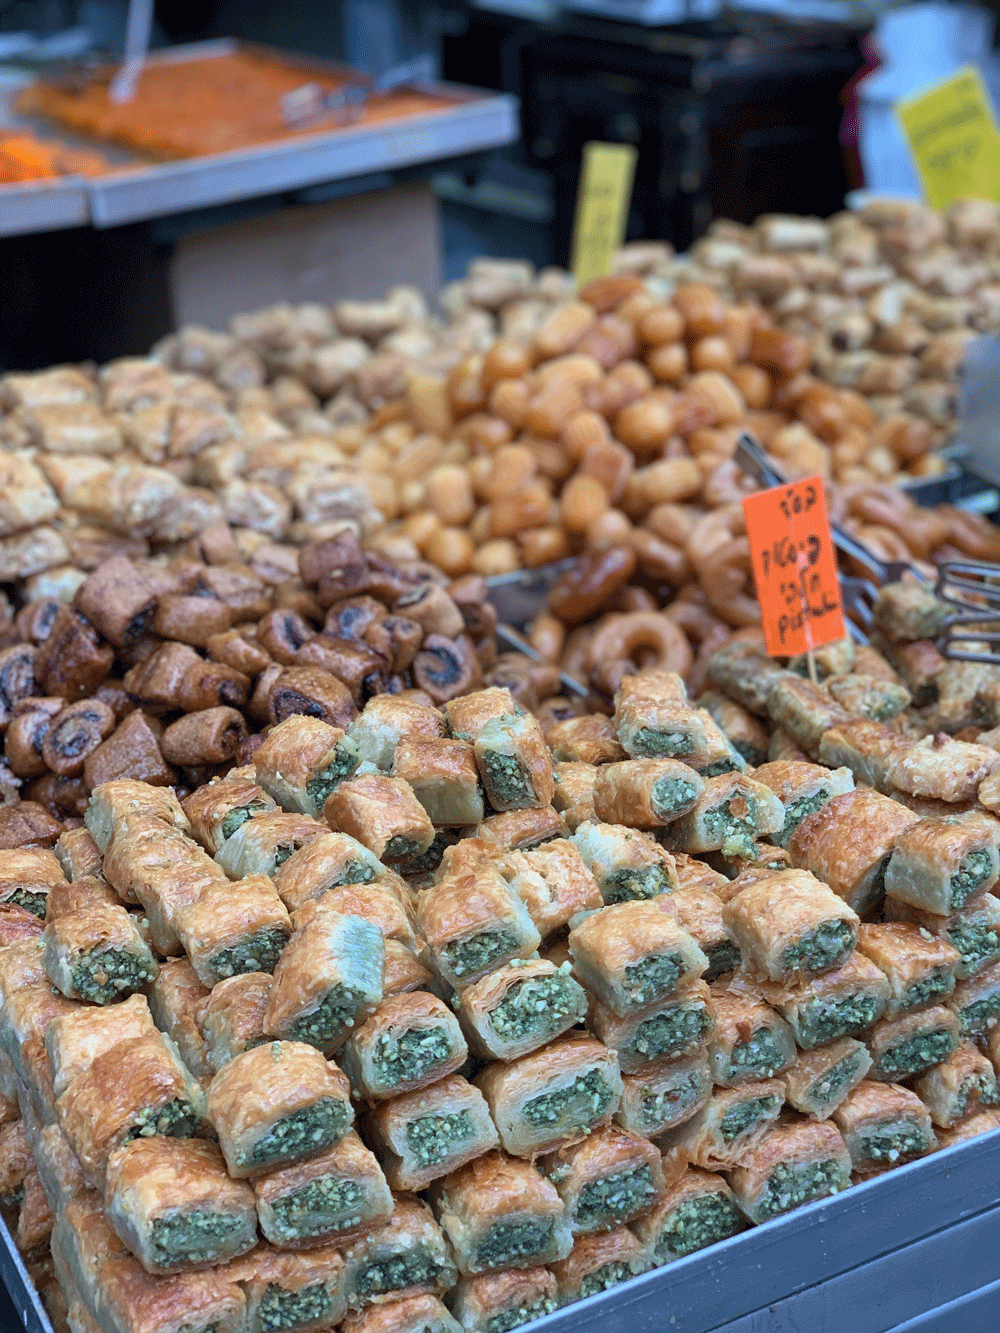 nedi-market-telaviv-israel